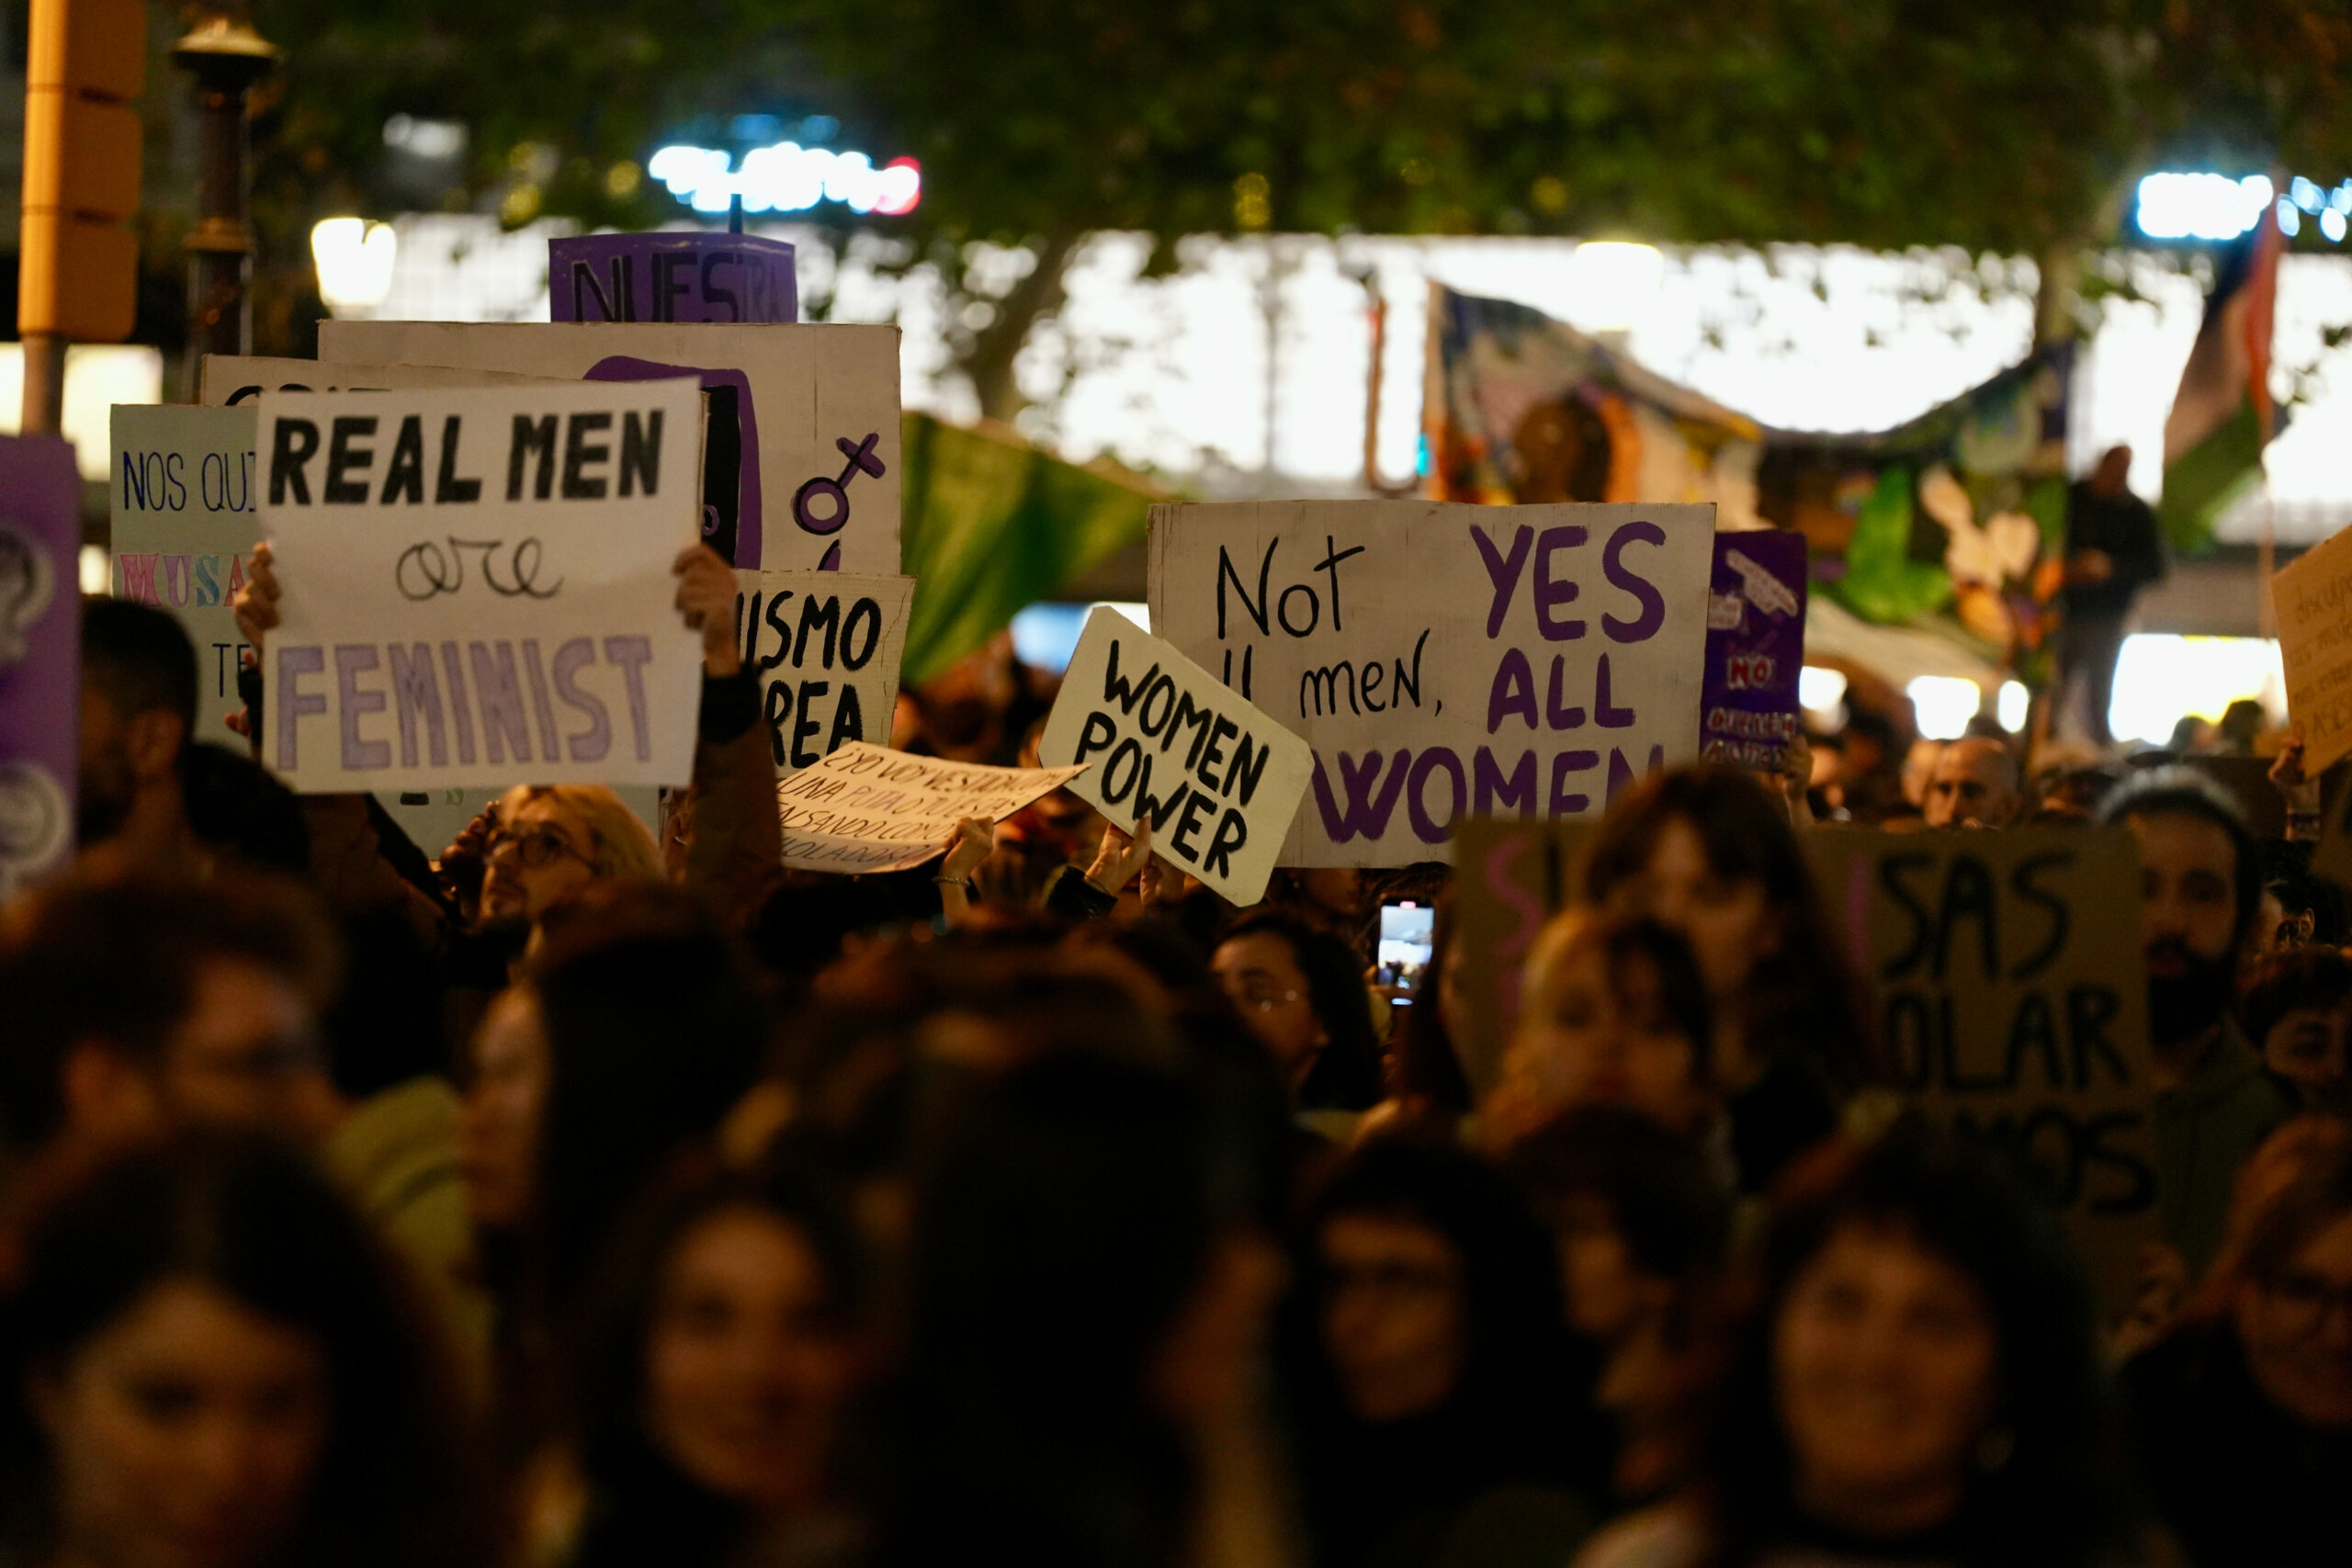 Miles de persones se manifiestan en Barcelona contra la violencia machista